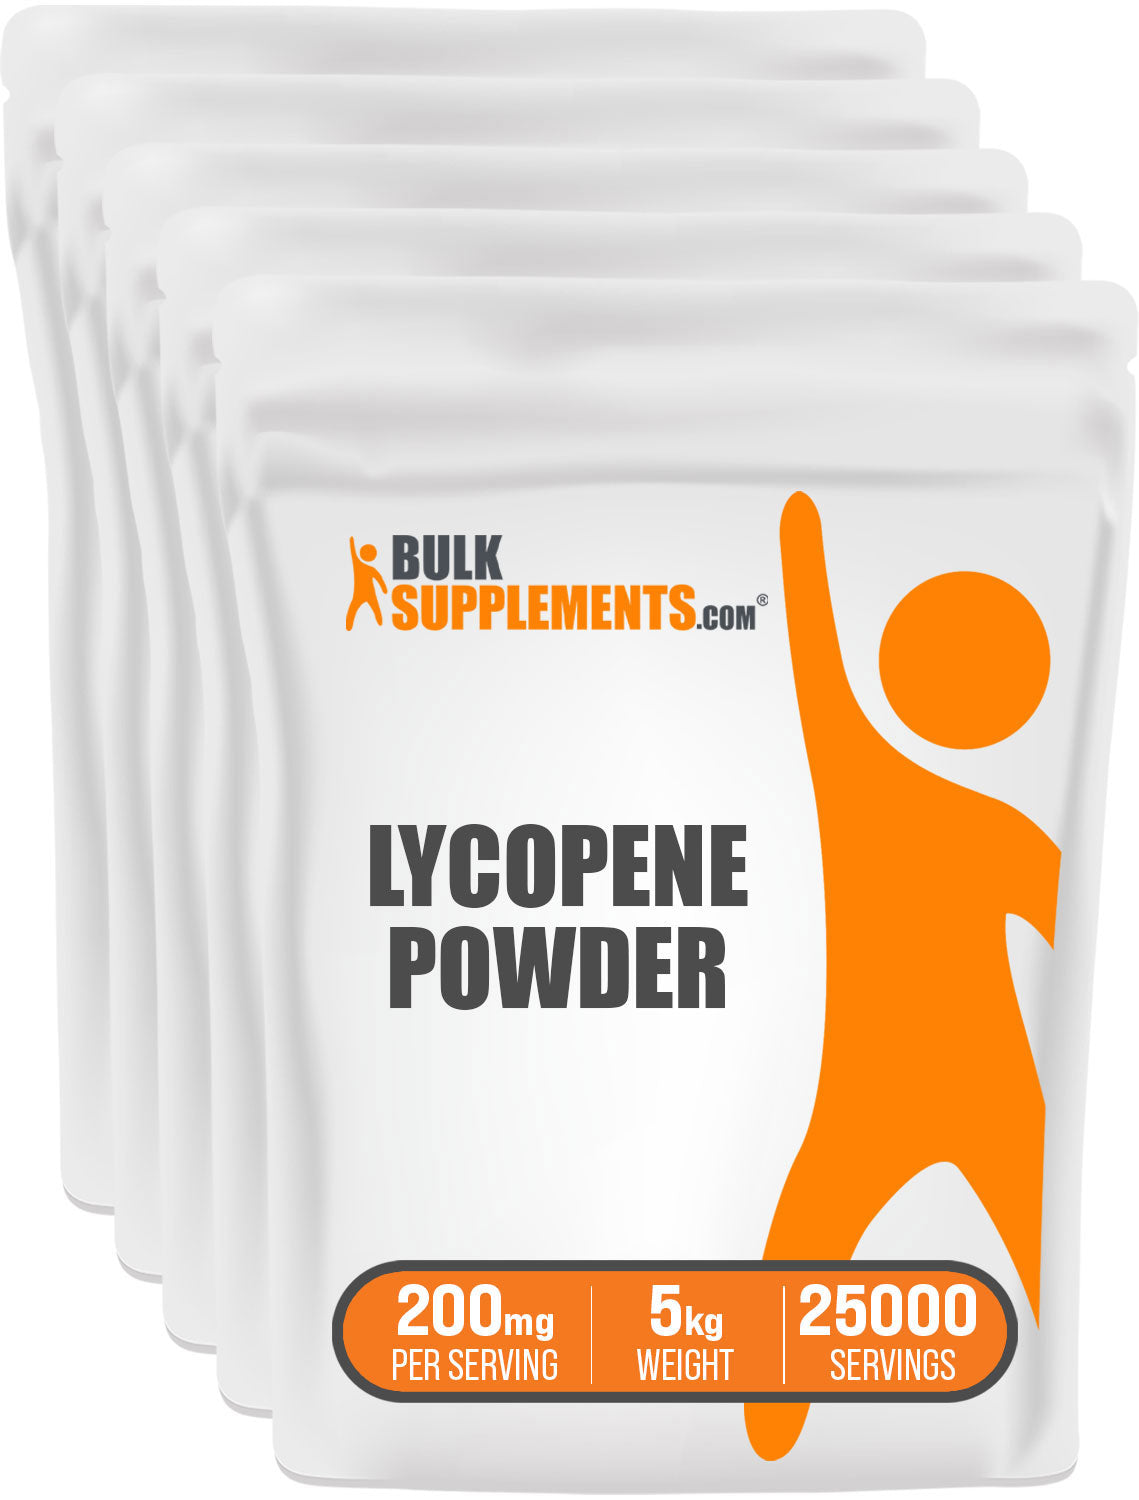 BulkSupplements.com Lycopene Powder 5kg bags